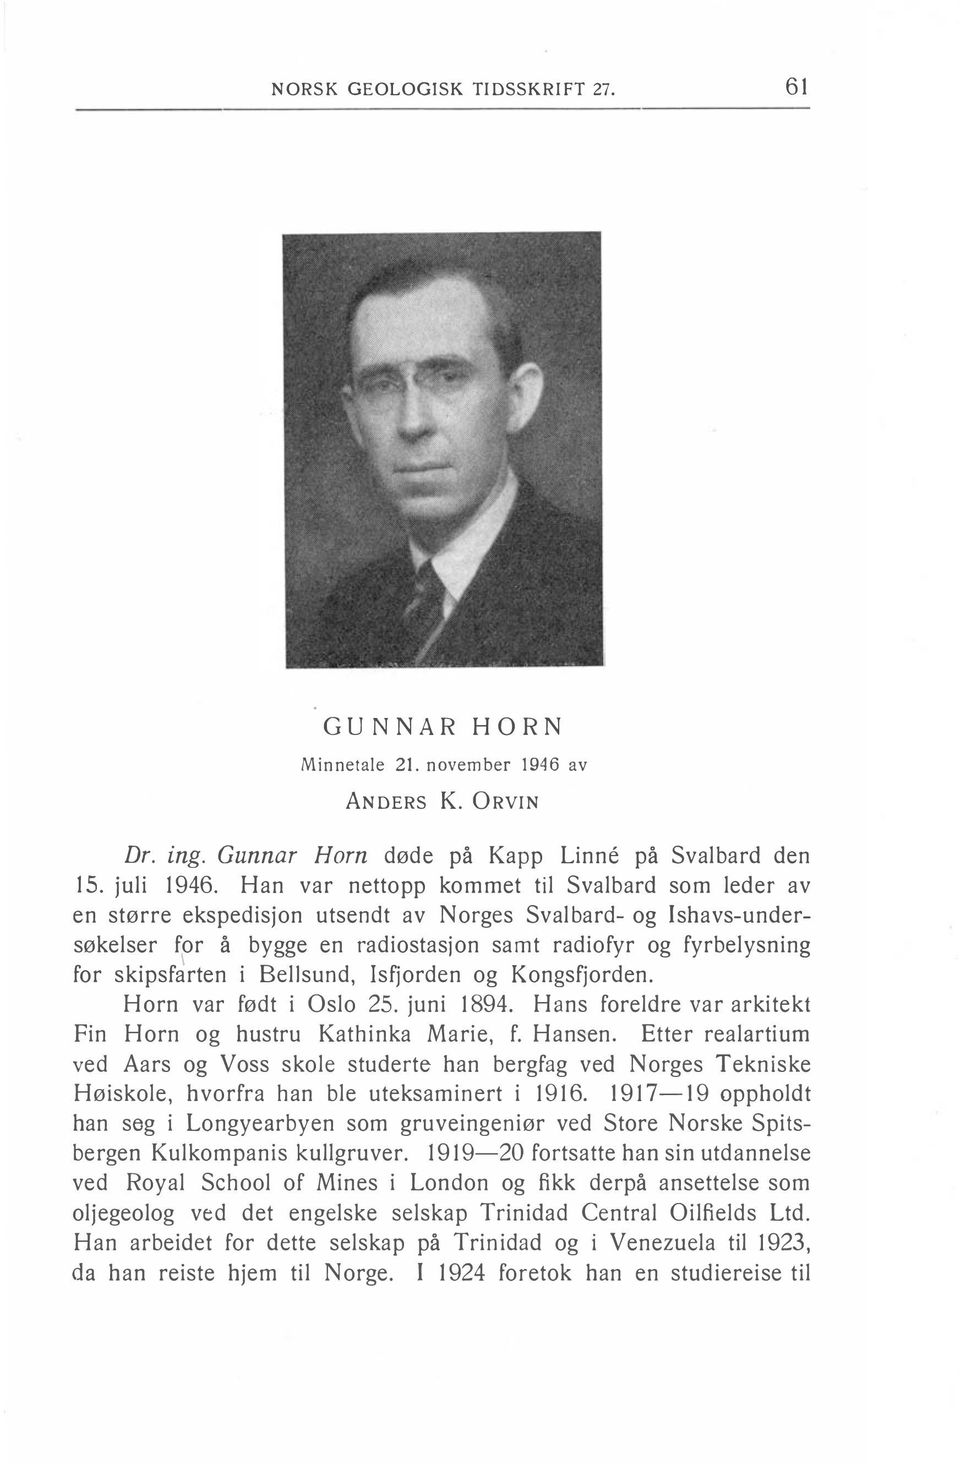 i Bellsund, Isfjorden og Kongsfjorden. Horn var født i Oslo 25. juni 1894. Hans foreldre var arkitekt Fin Horn og hustru Kathinka Marie, f. Hansen.